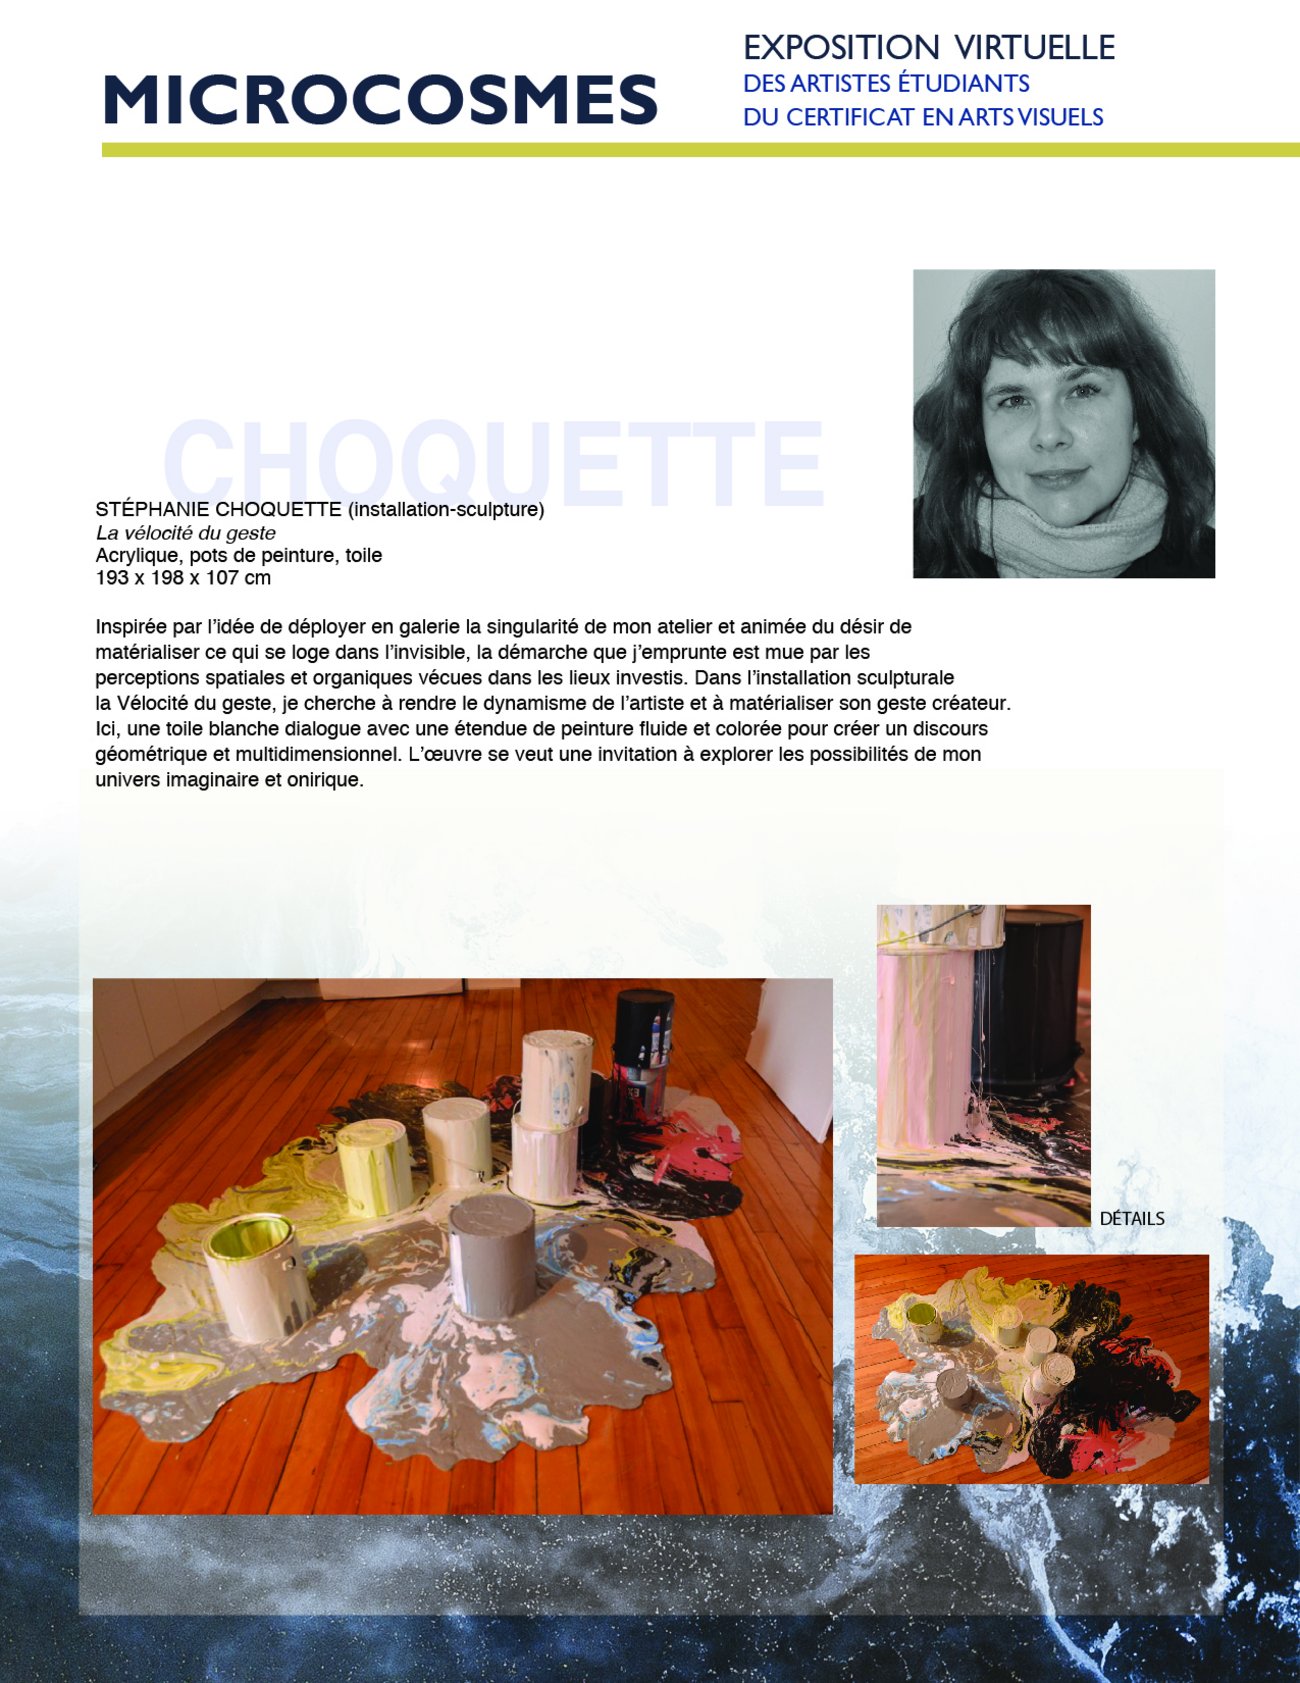 Stéphanie Choquette